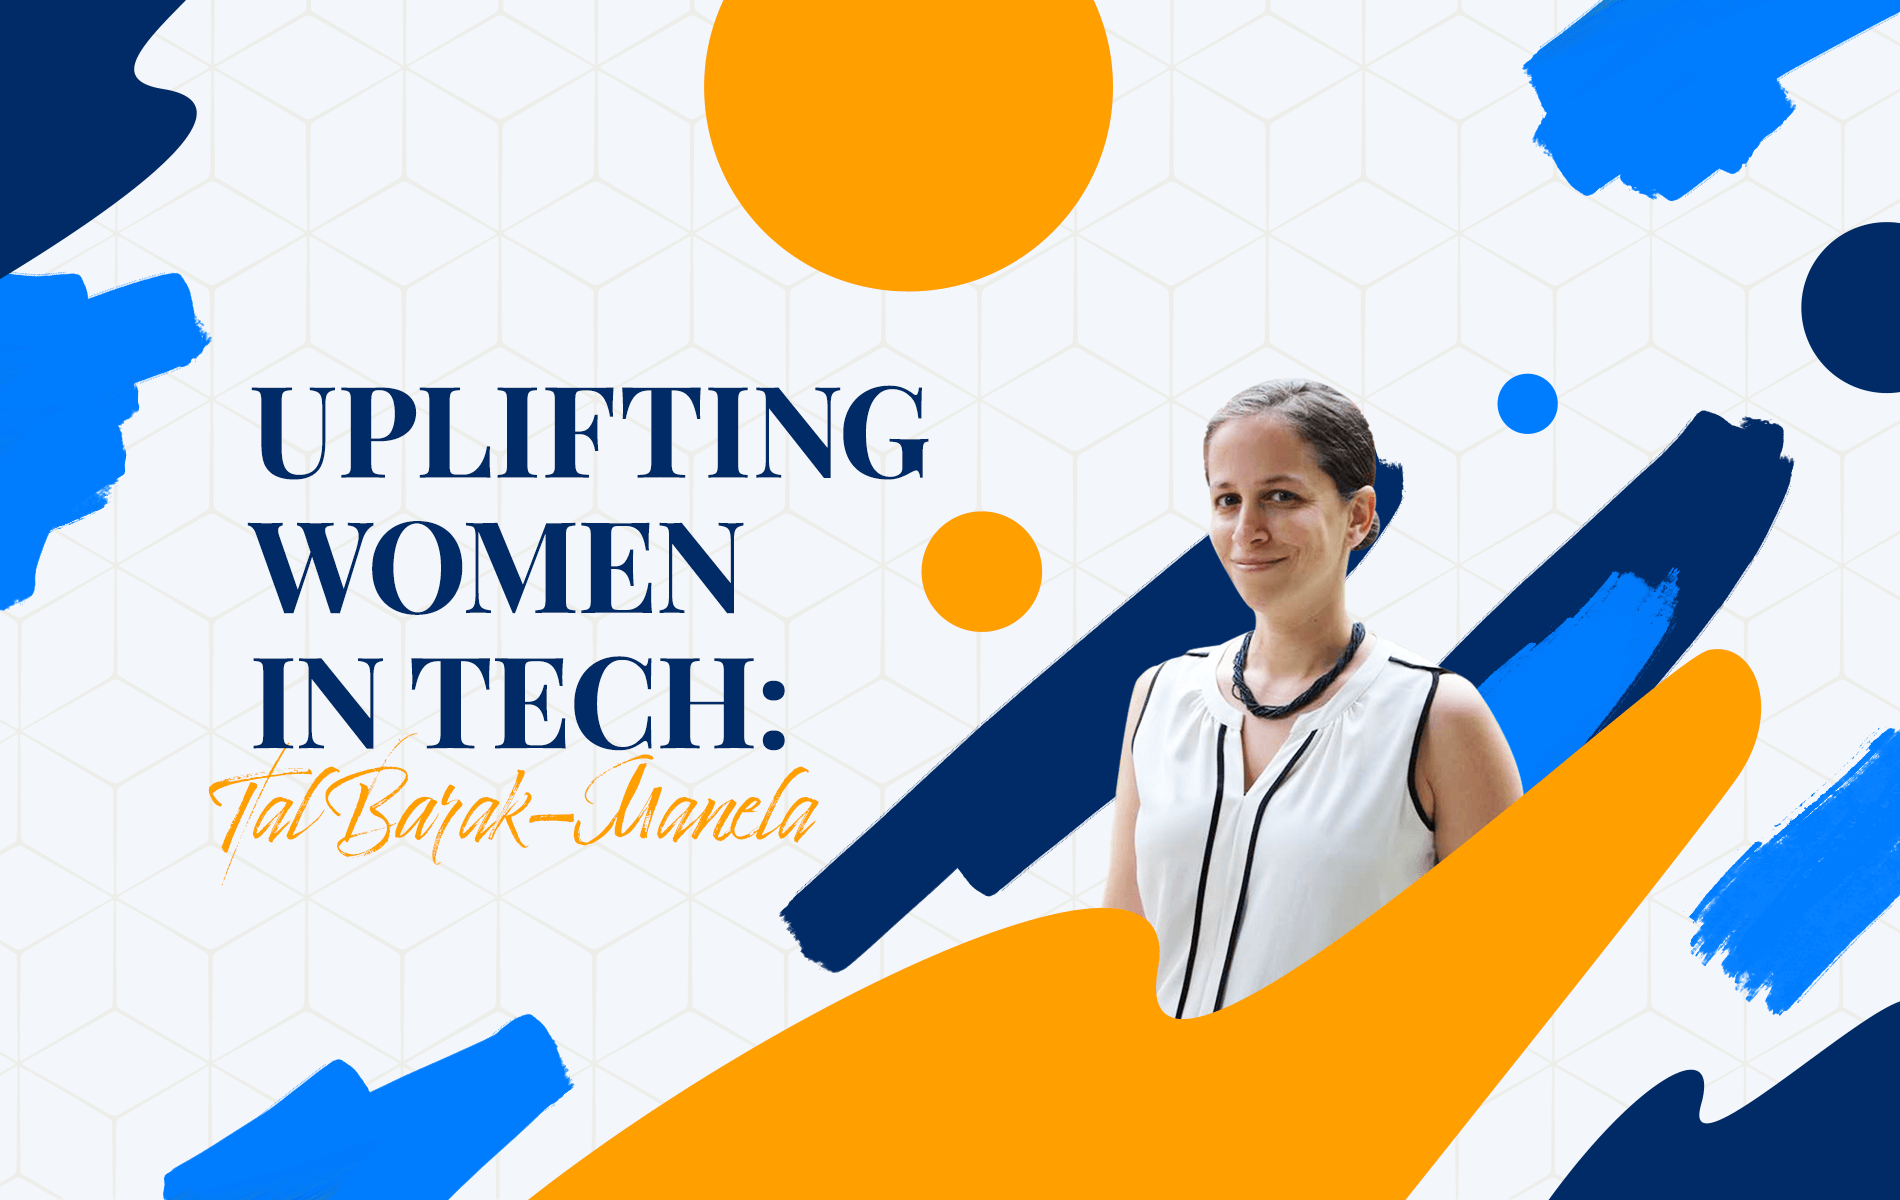 Uplifting Women in Tech: Tal Barak-Manela